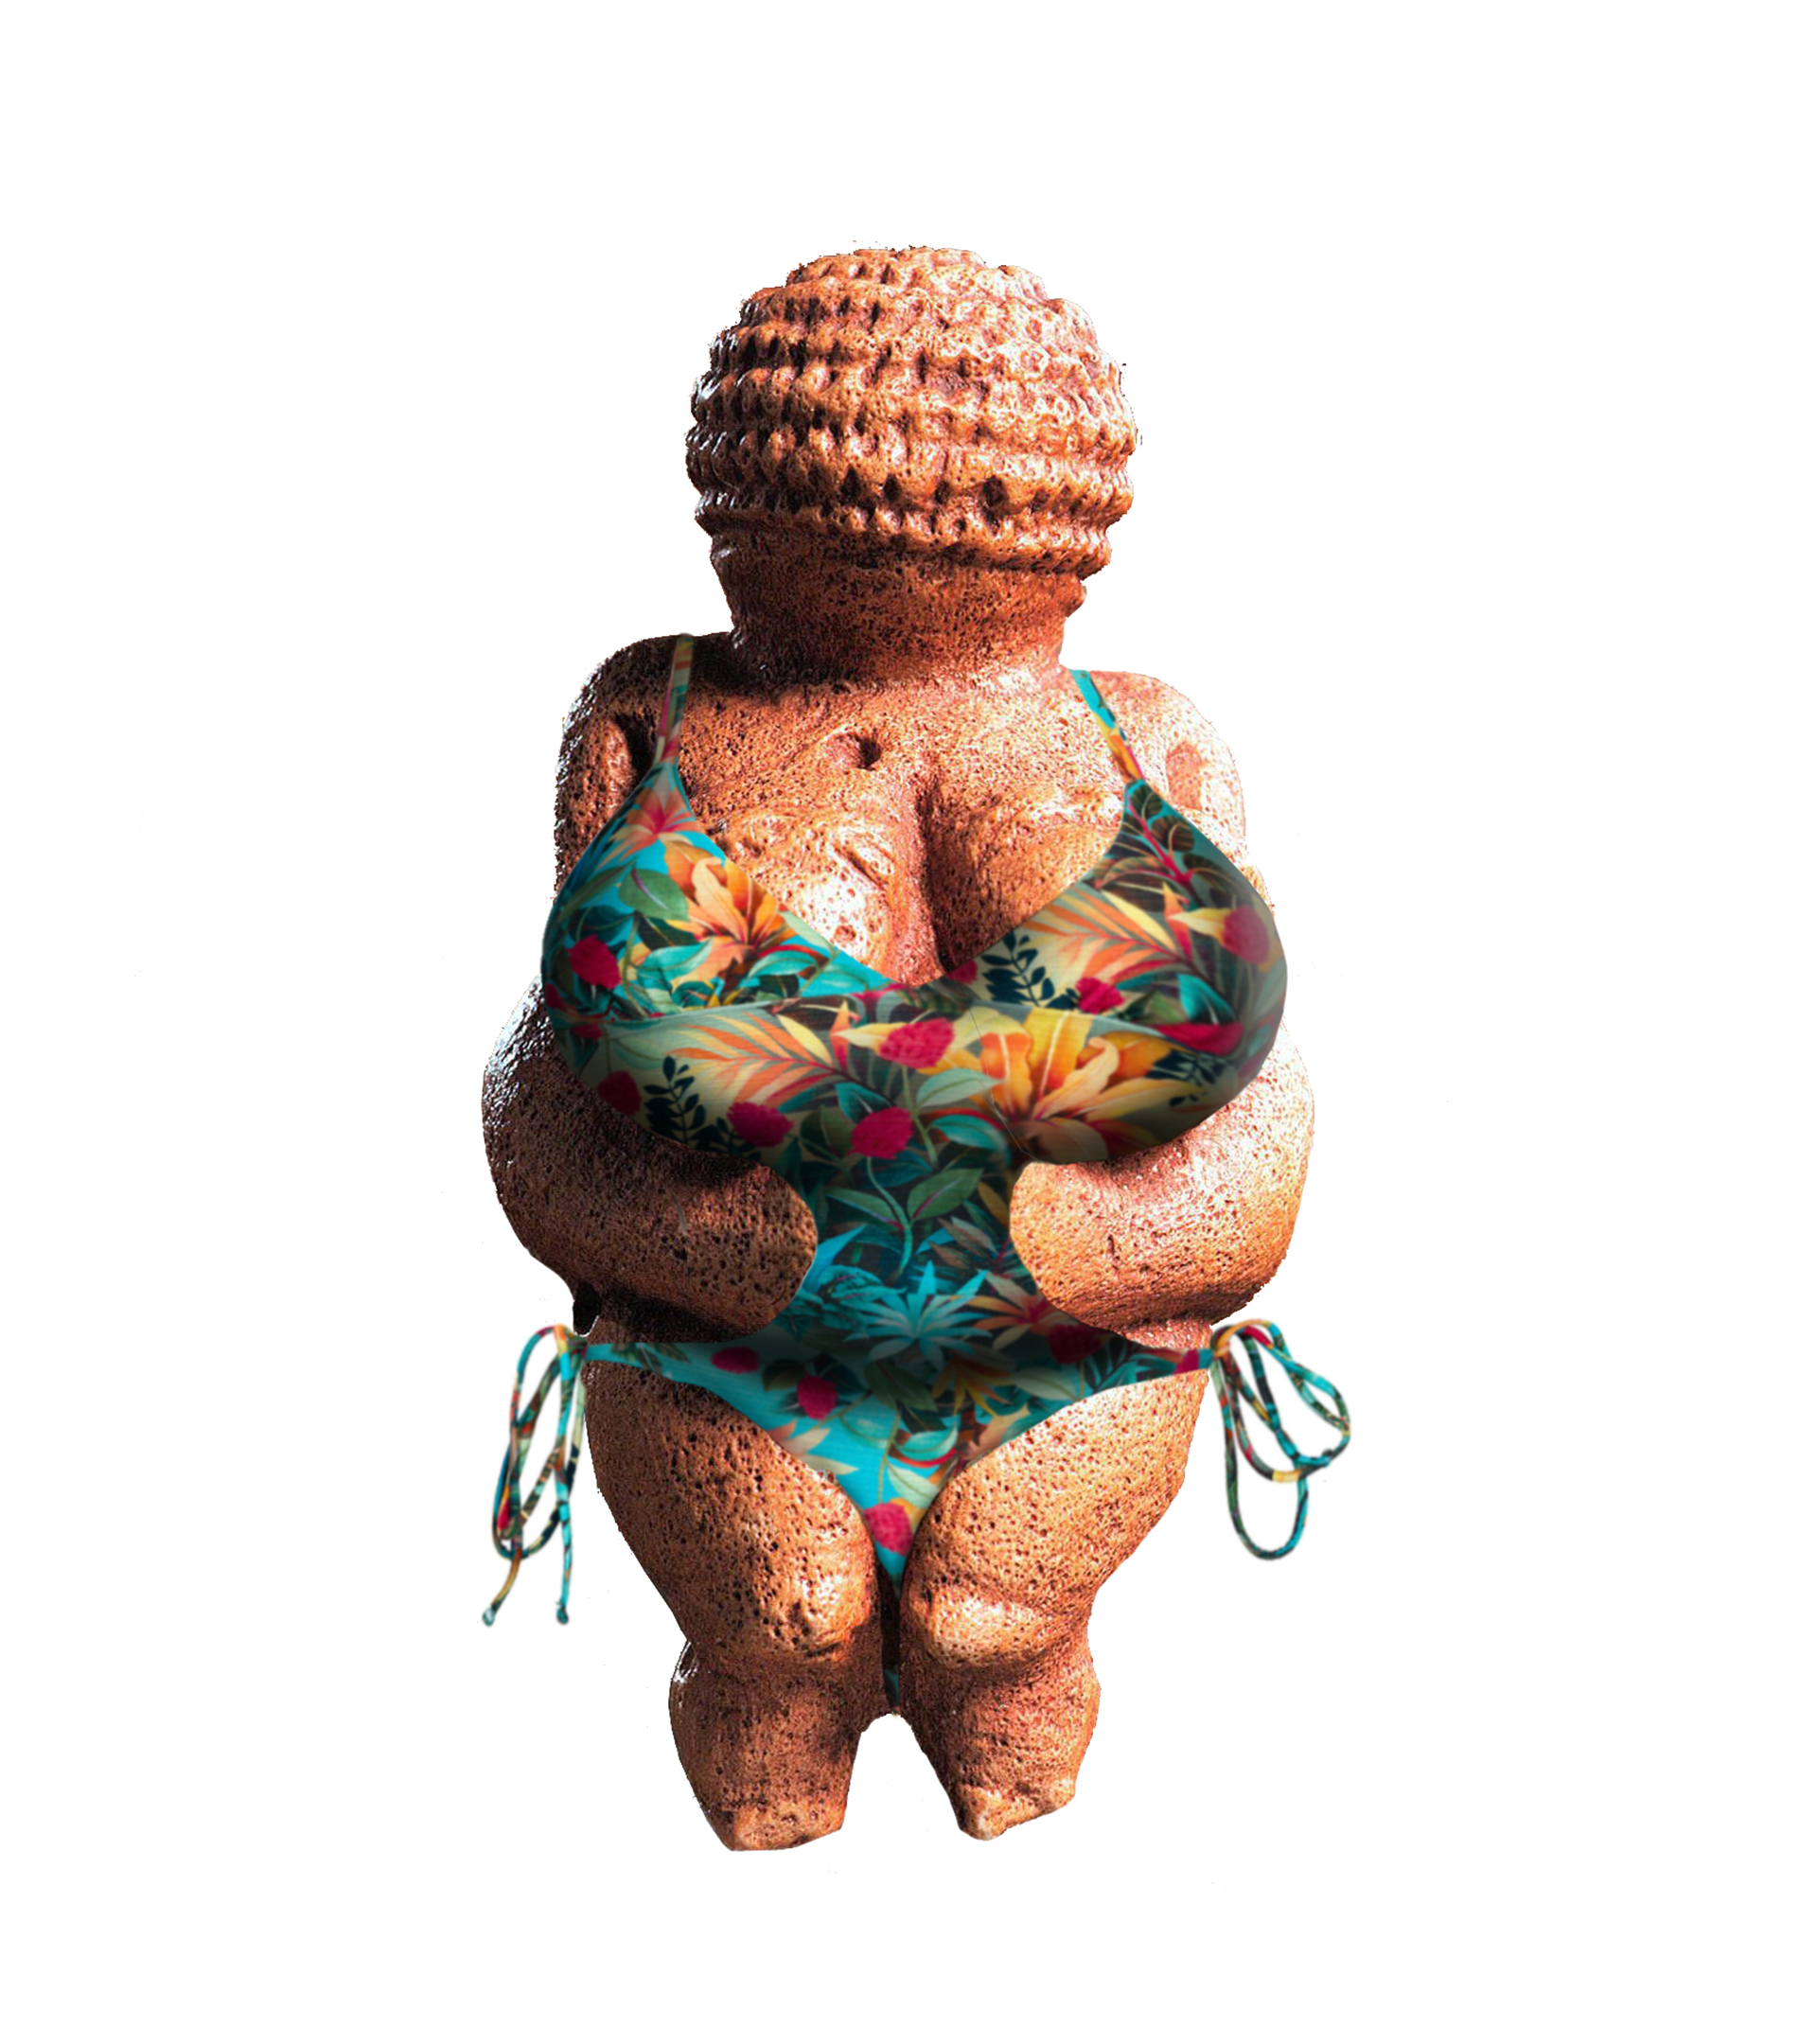 Orgullo gordo ante la operación bikini: "Si me llaman valiente por posar en bañador, es que la gordofobia existe"